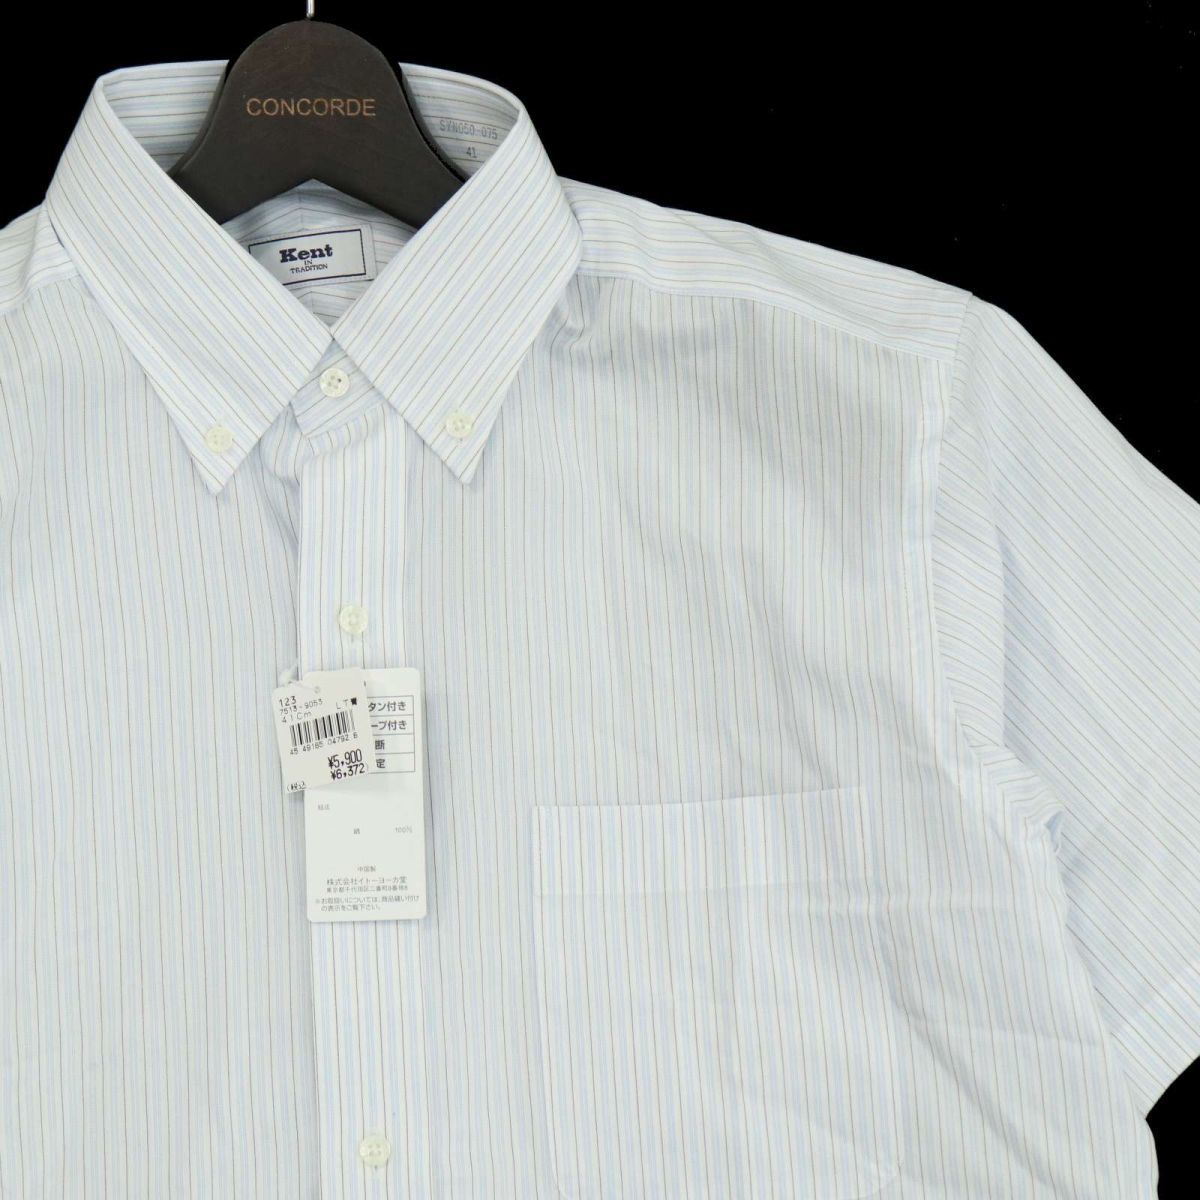 [ новый товар не использовался ] Kent in TRADITION kent короткий рукав полоса рубашка рубашка Sz... вокруг 41cm мужской bijikaji большой A3T04376_4#A